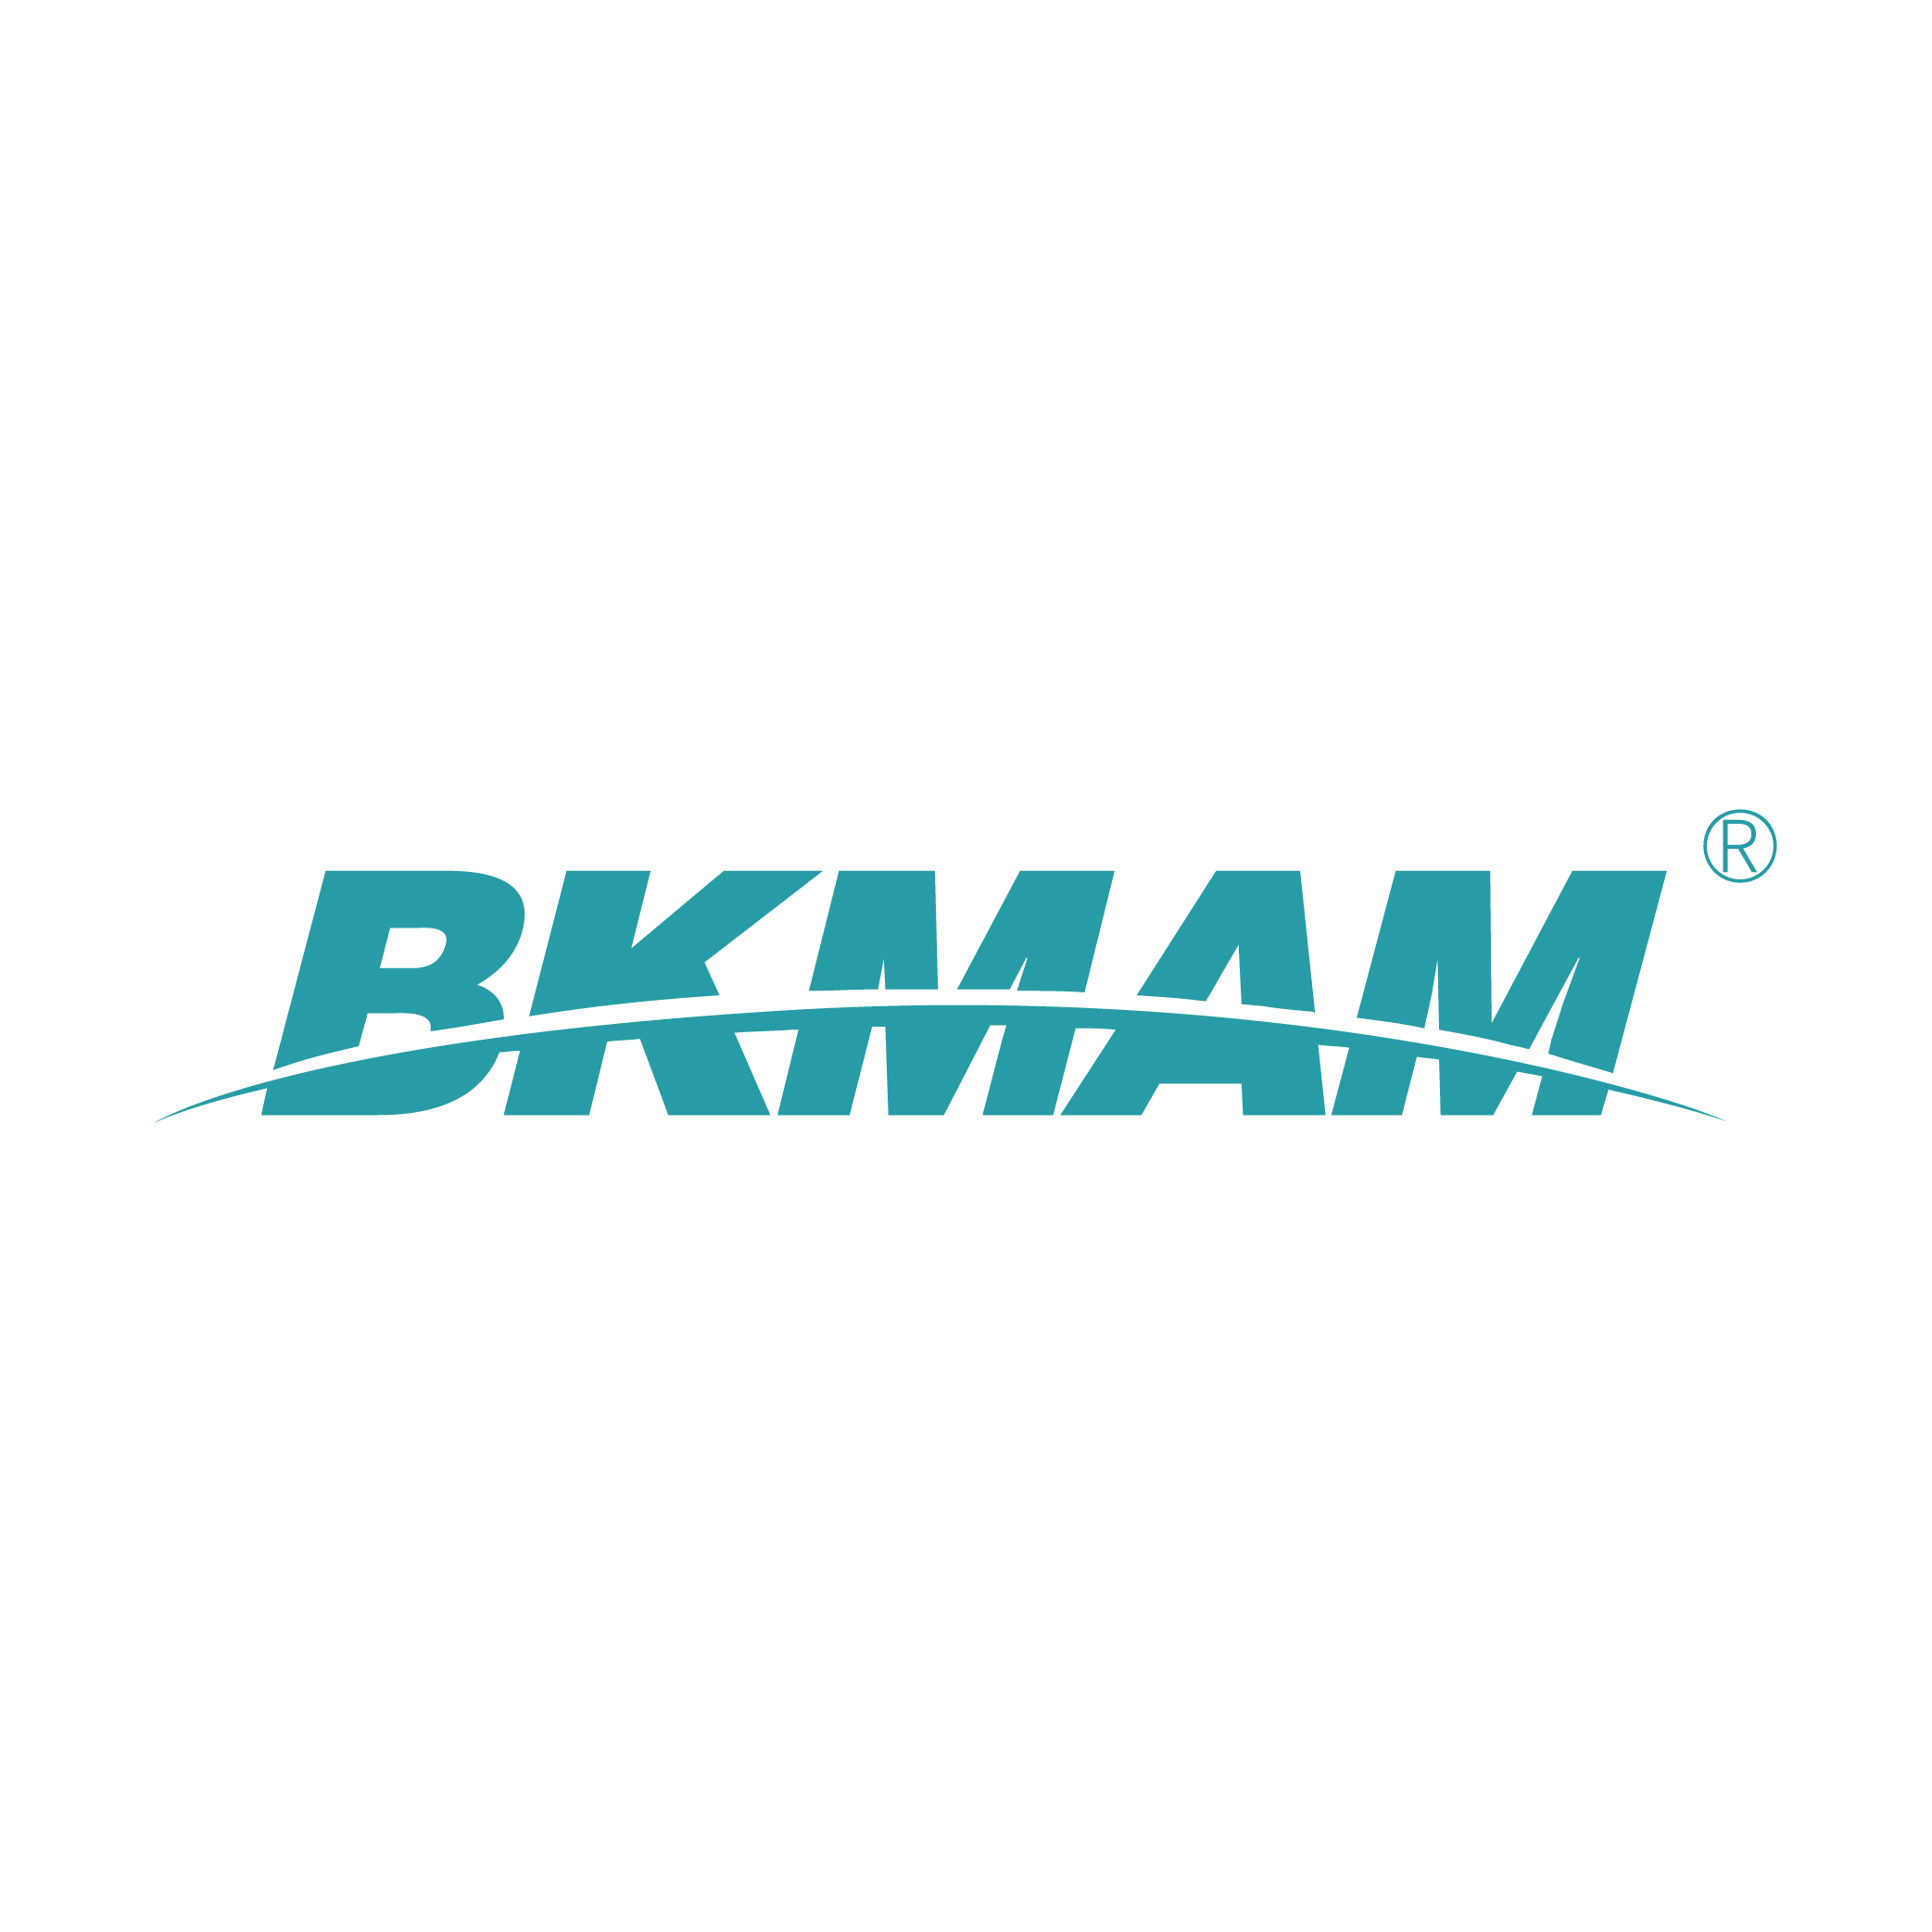 Hunan BKMAM Holdings Co., Ltd